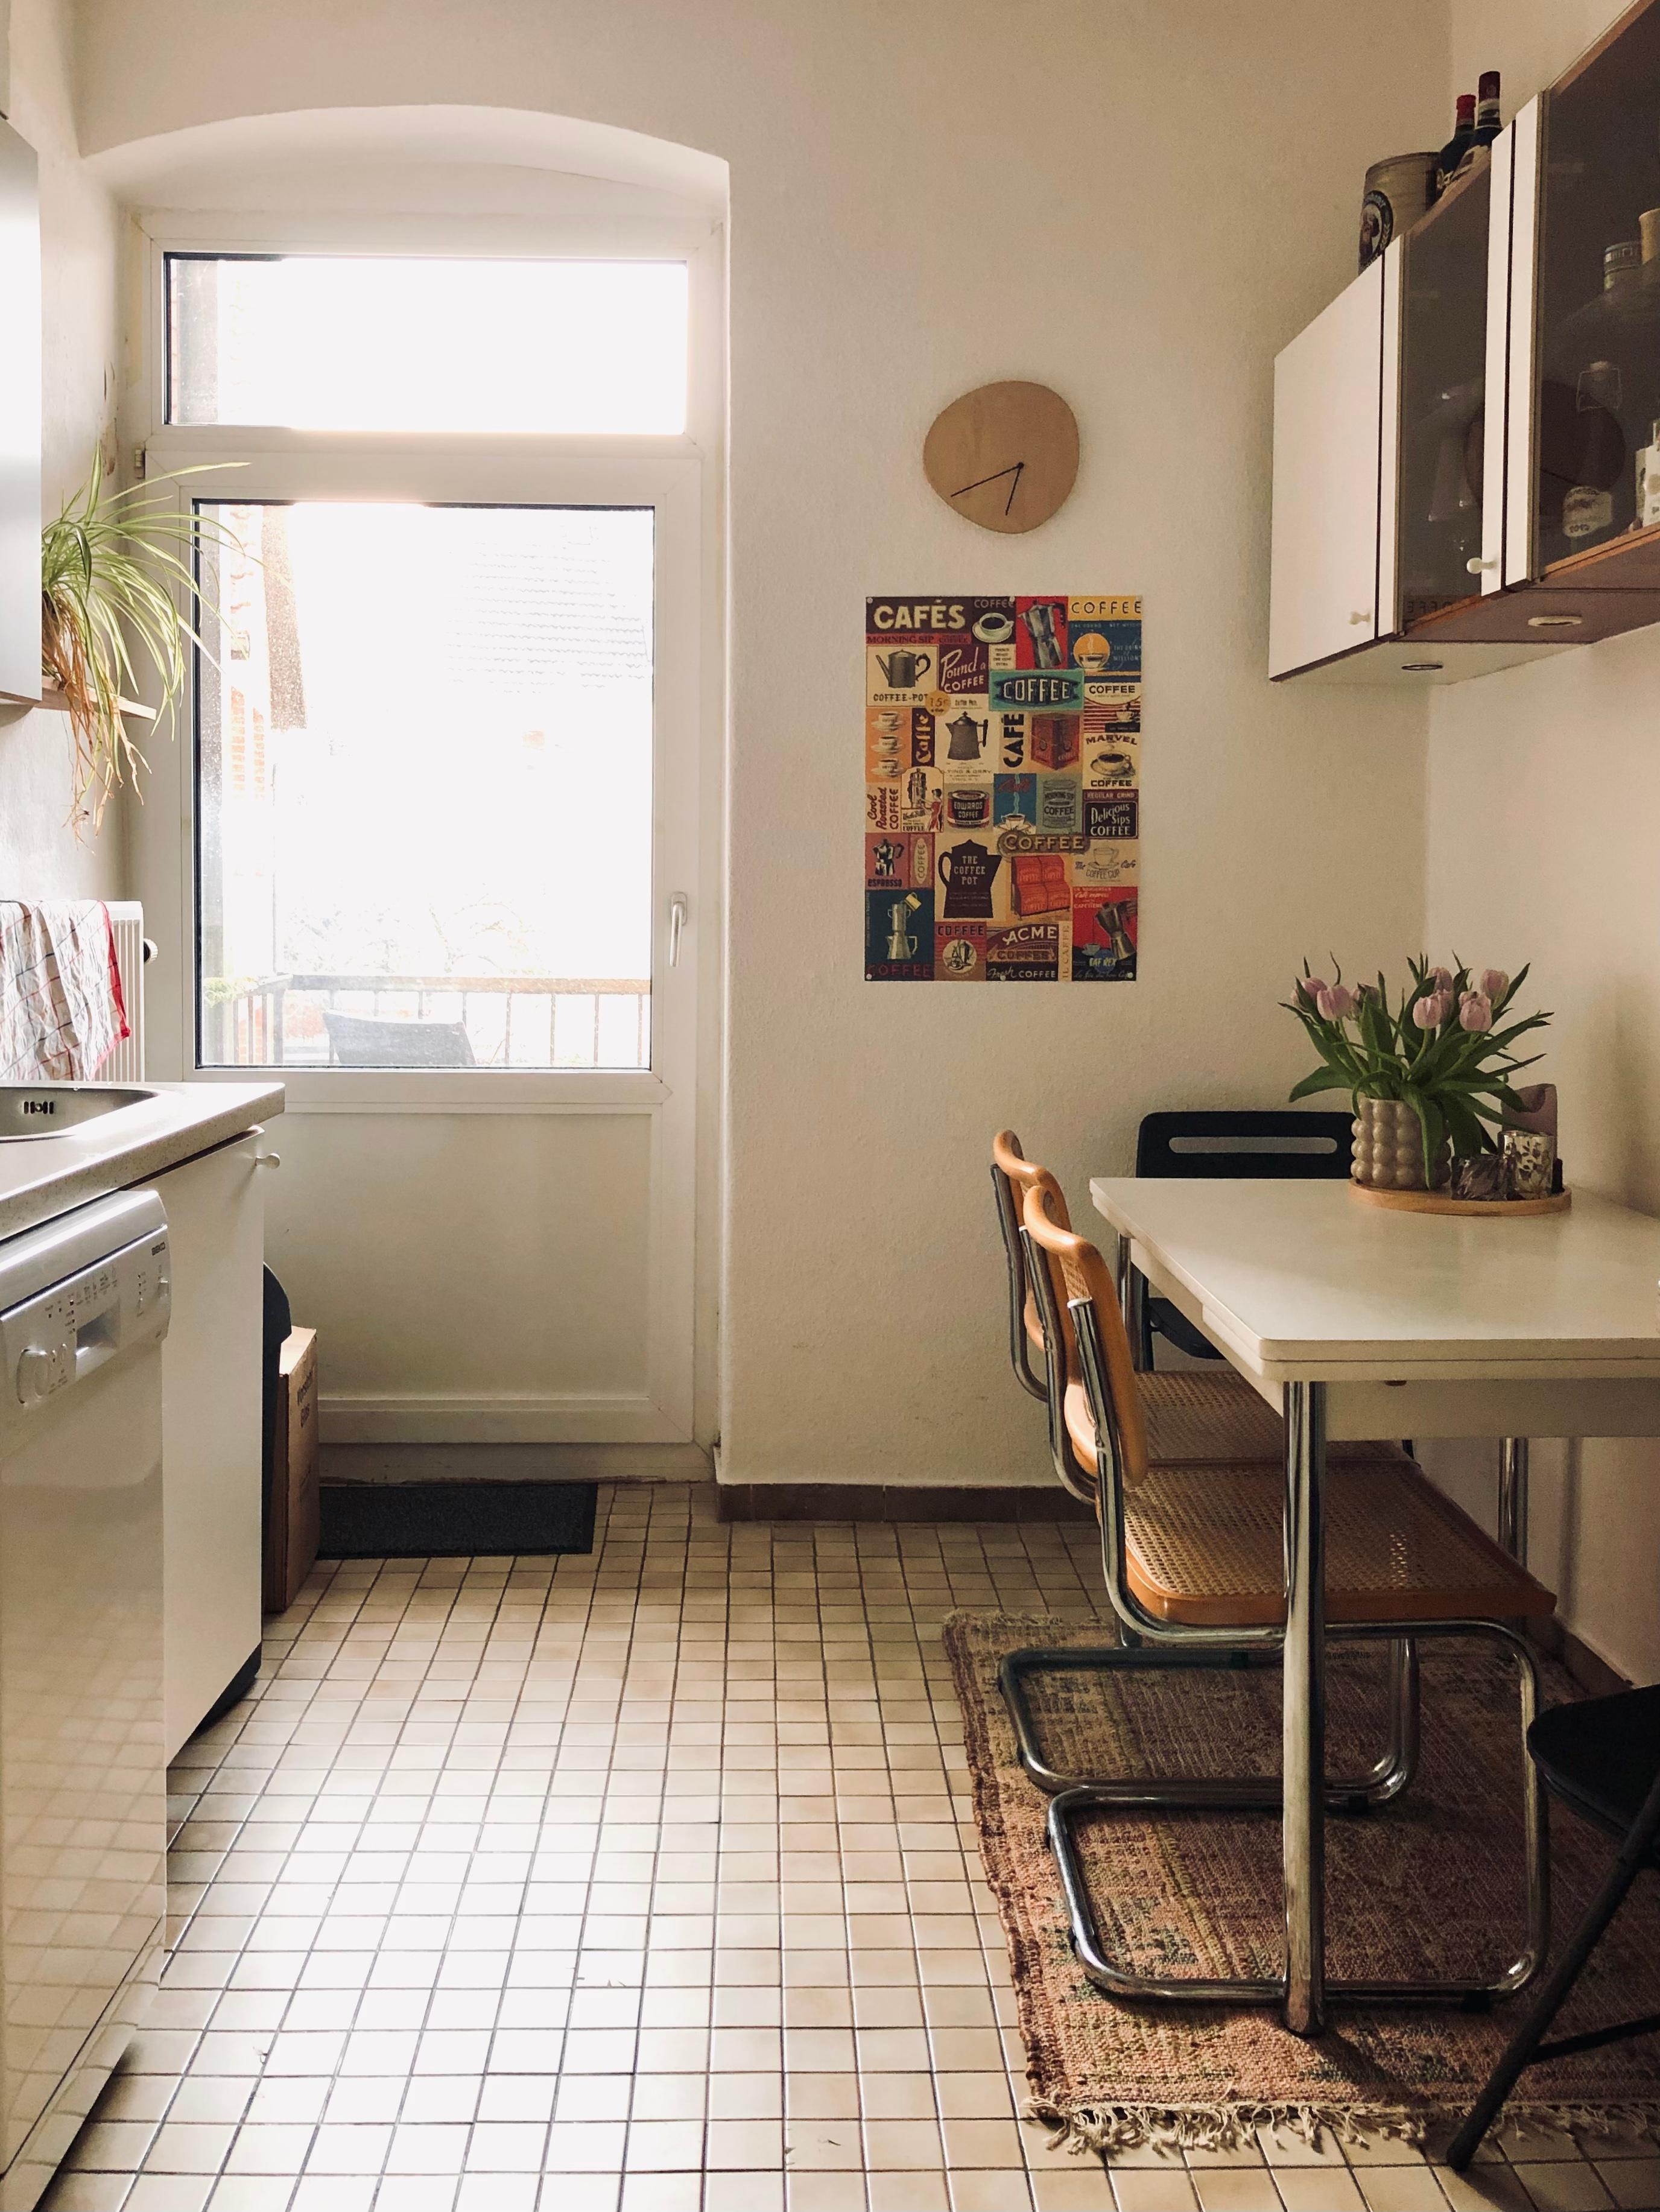 In der Küche ist ein kleiner aber feiner Teppich eingezogen 🥰
#altbauküche #newrug #tulpenzumwochenende 